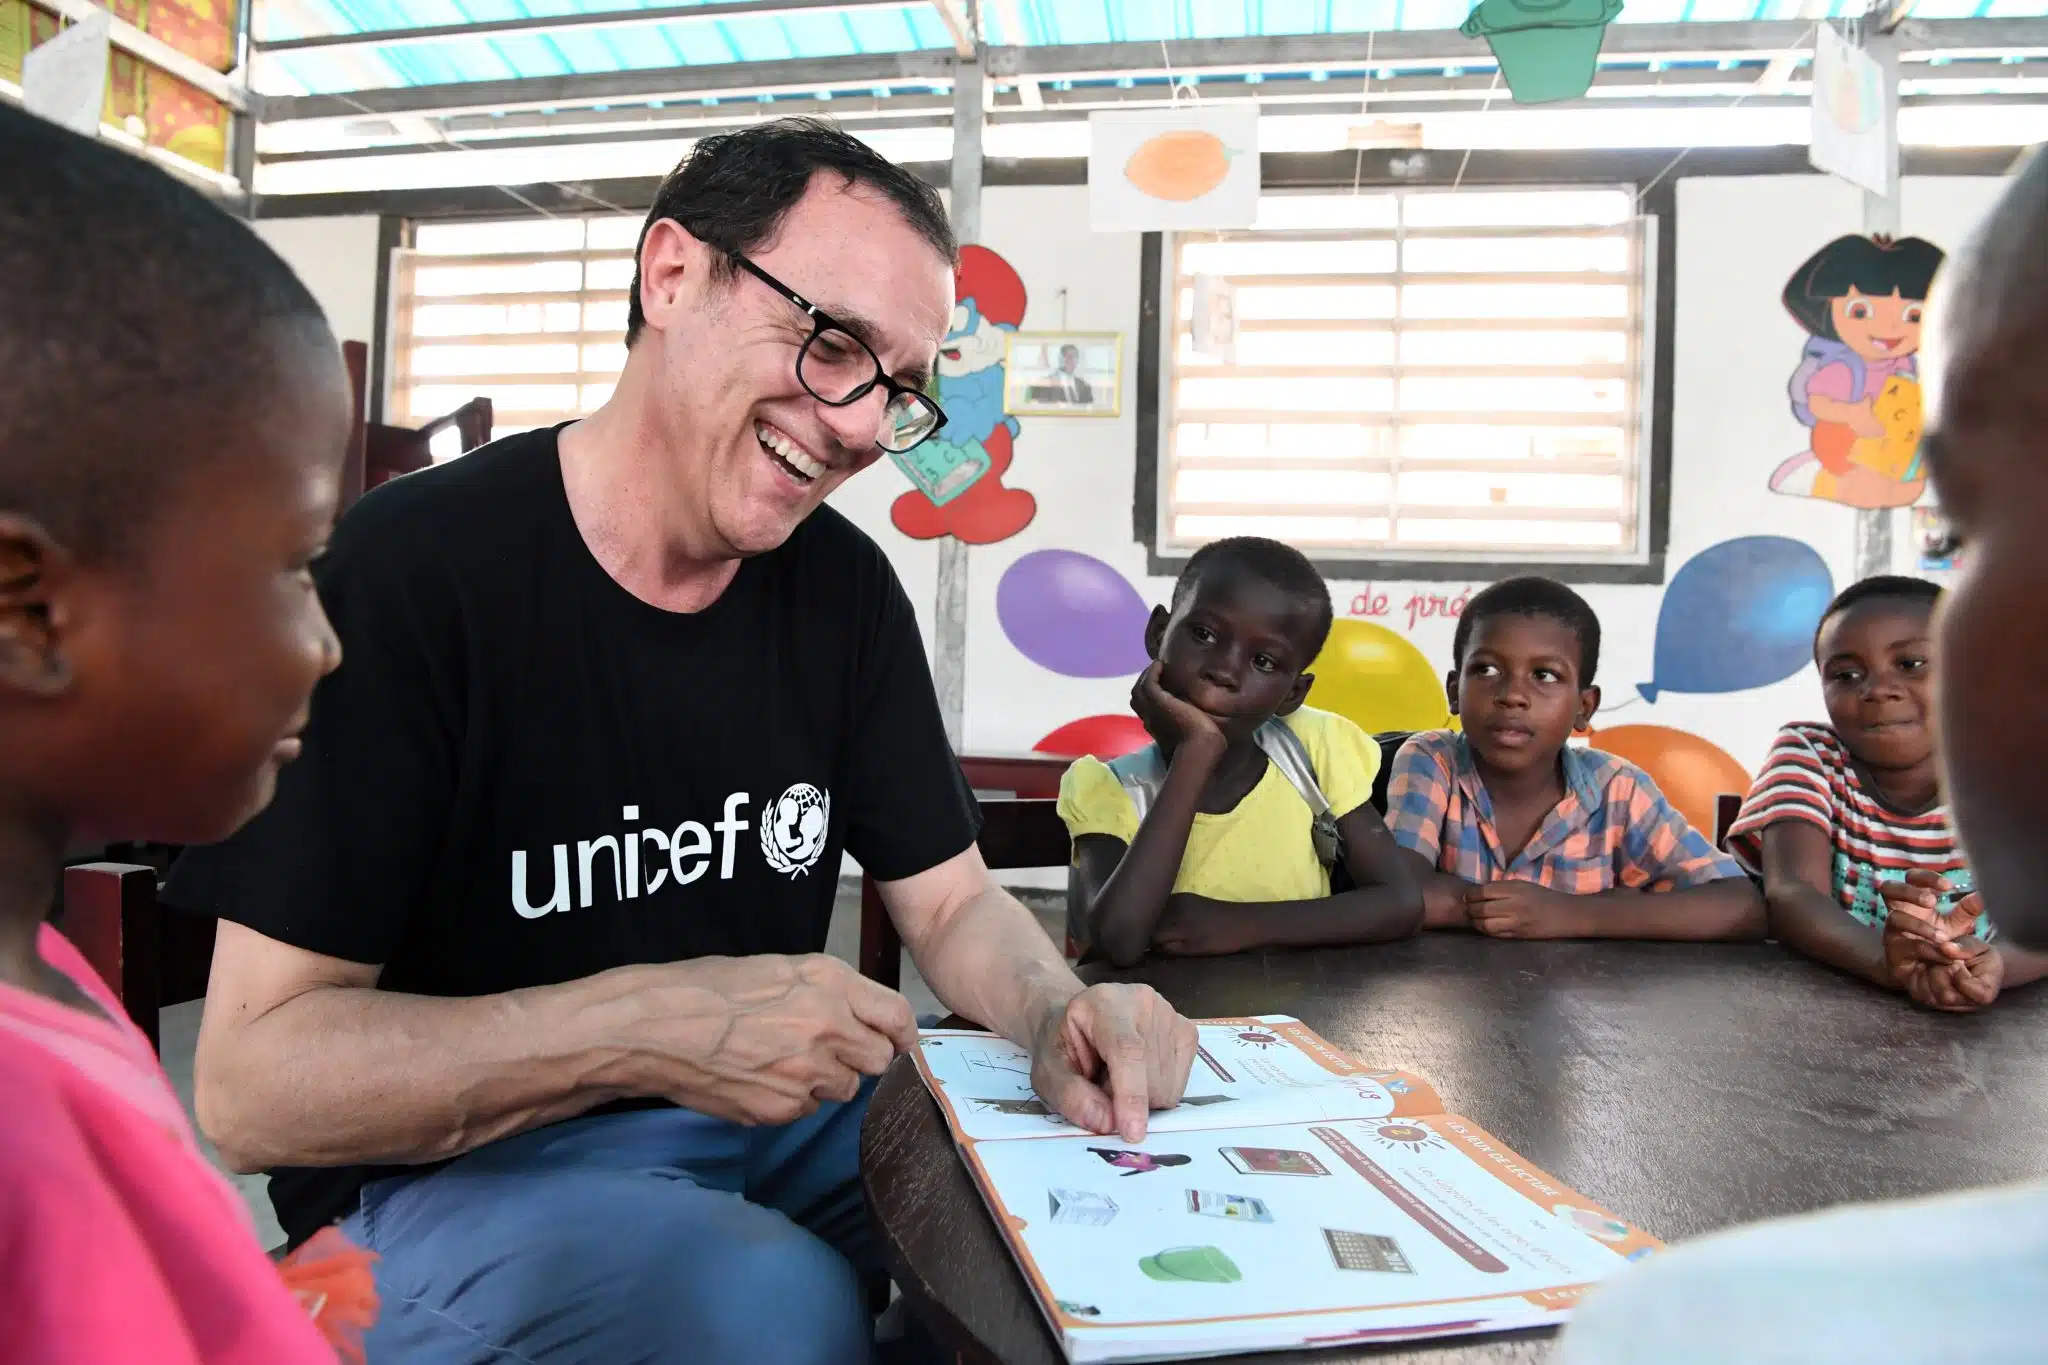 Thierry Beccaro, ambassadeur de l'UNICEF visite une école à Gonzagueville, une banlieue d'Abidjan, la capitale de la Côte d'Ivoire.© UNICEF/UN0285088/Dejongh